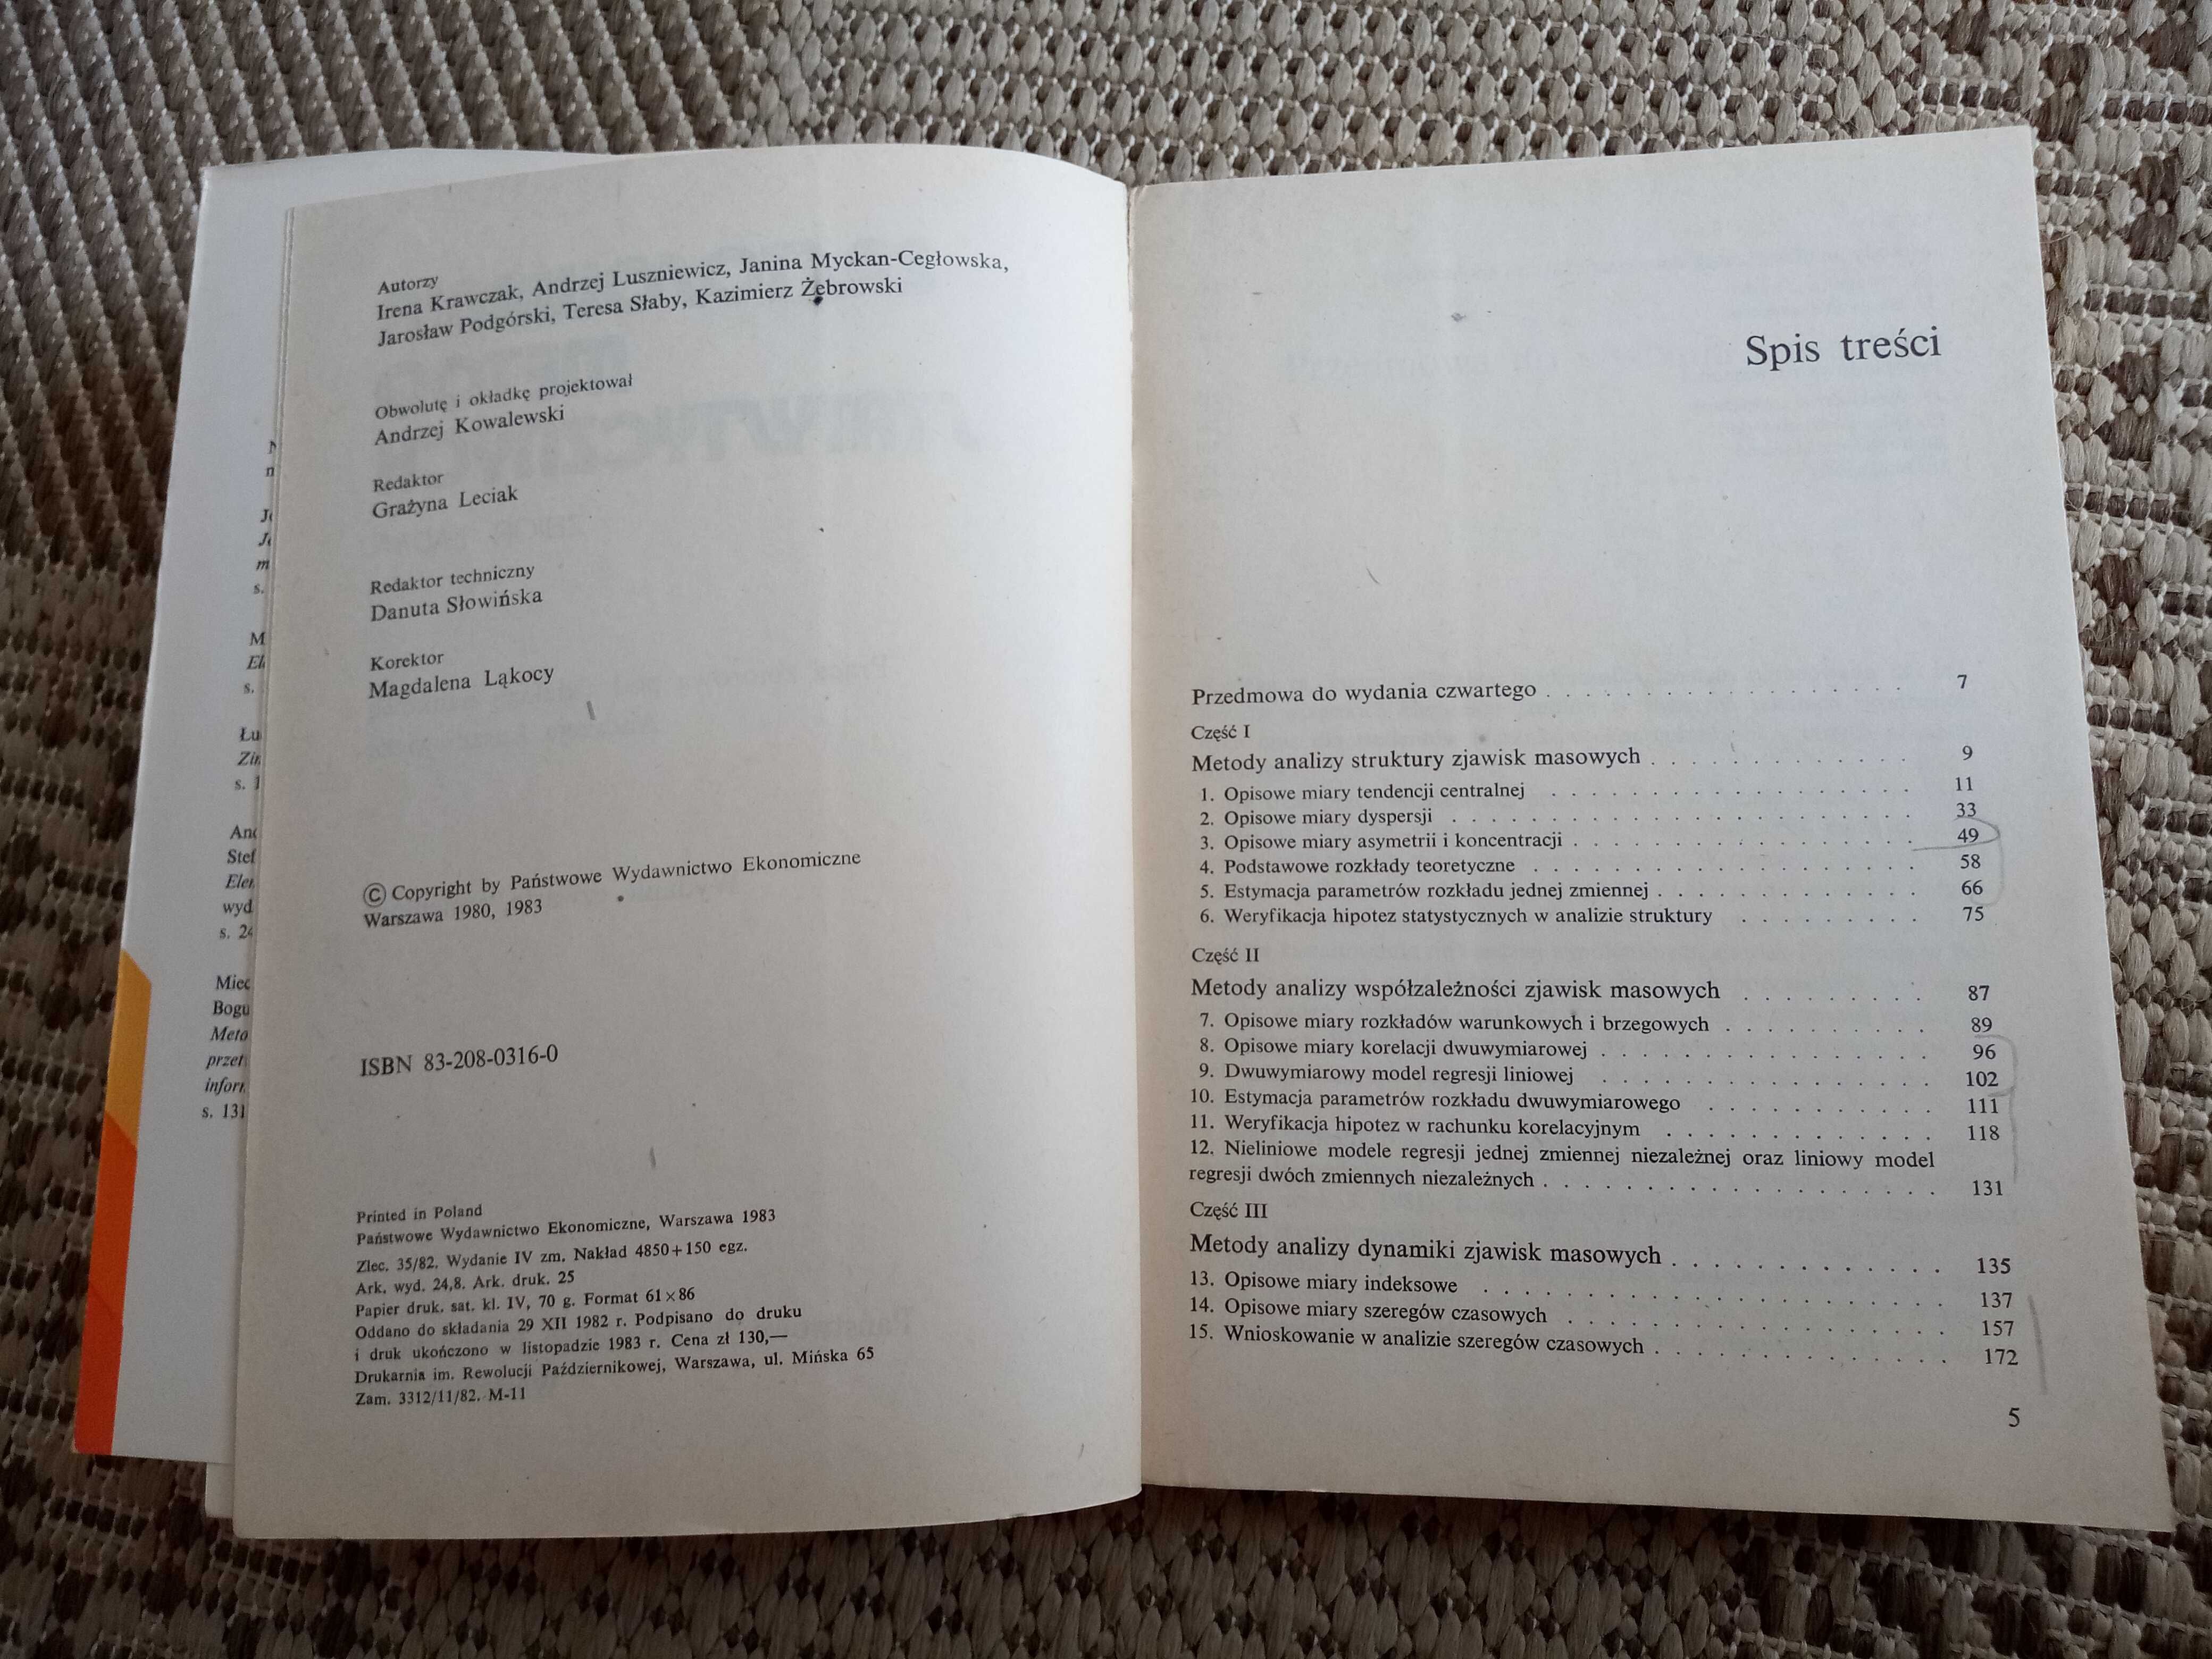 Zastosowania metod statystycznych - zbiór zadań, 1983